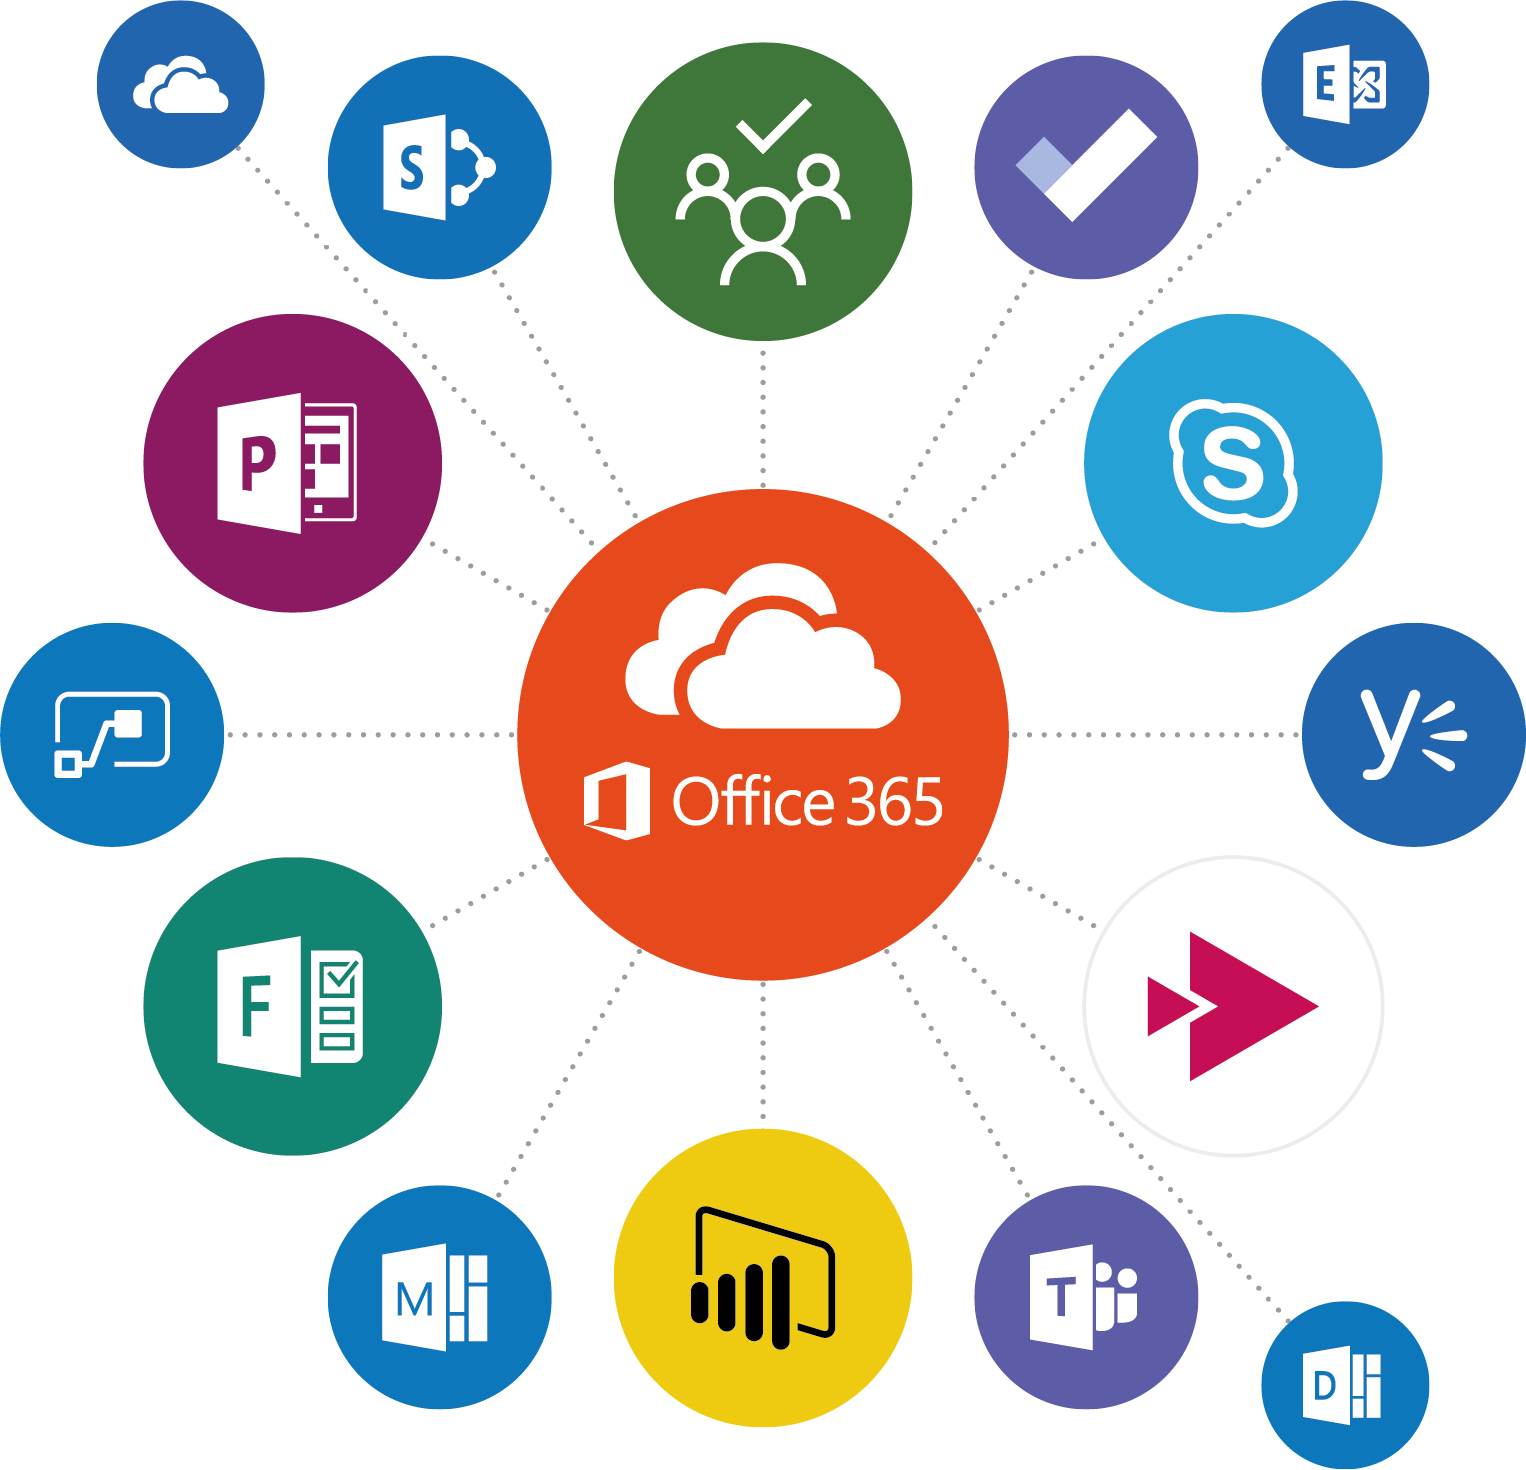 Office 365 Diagram